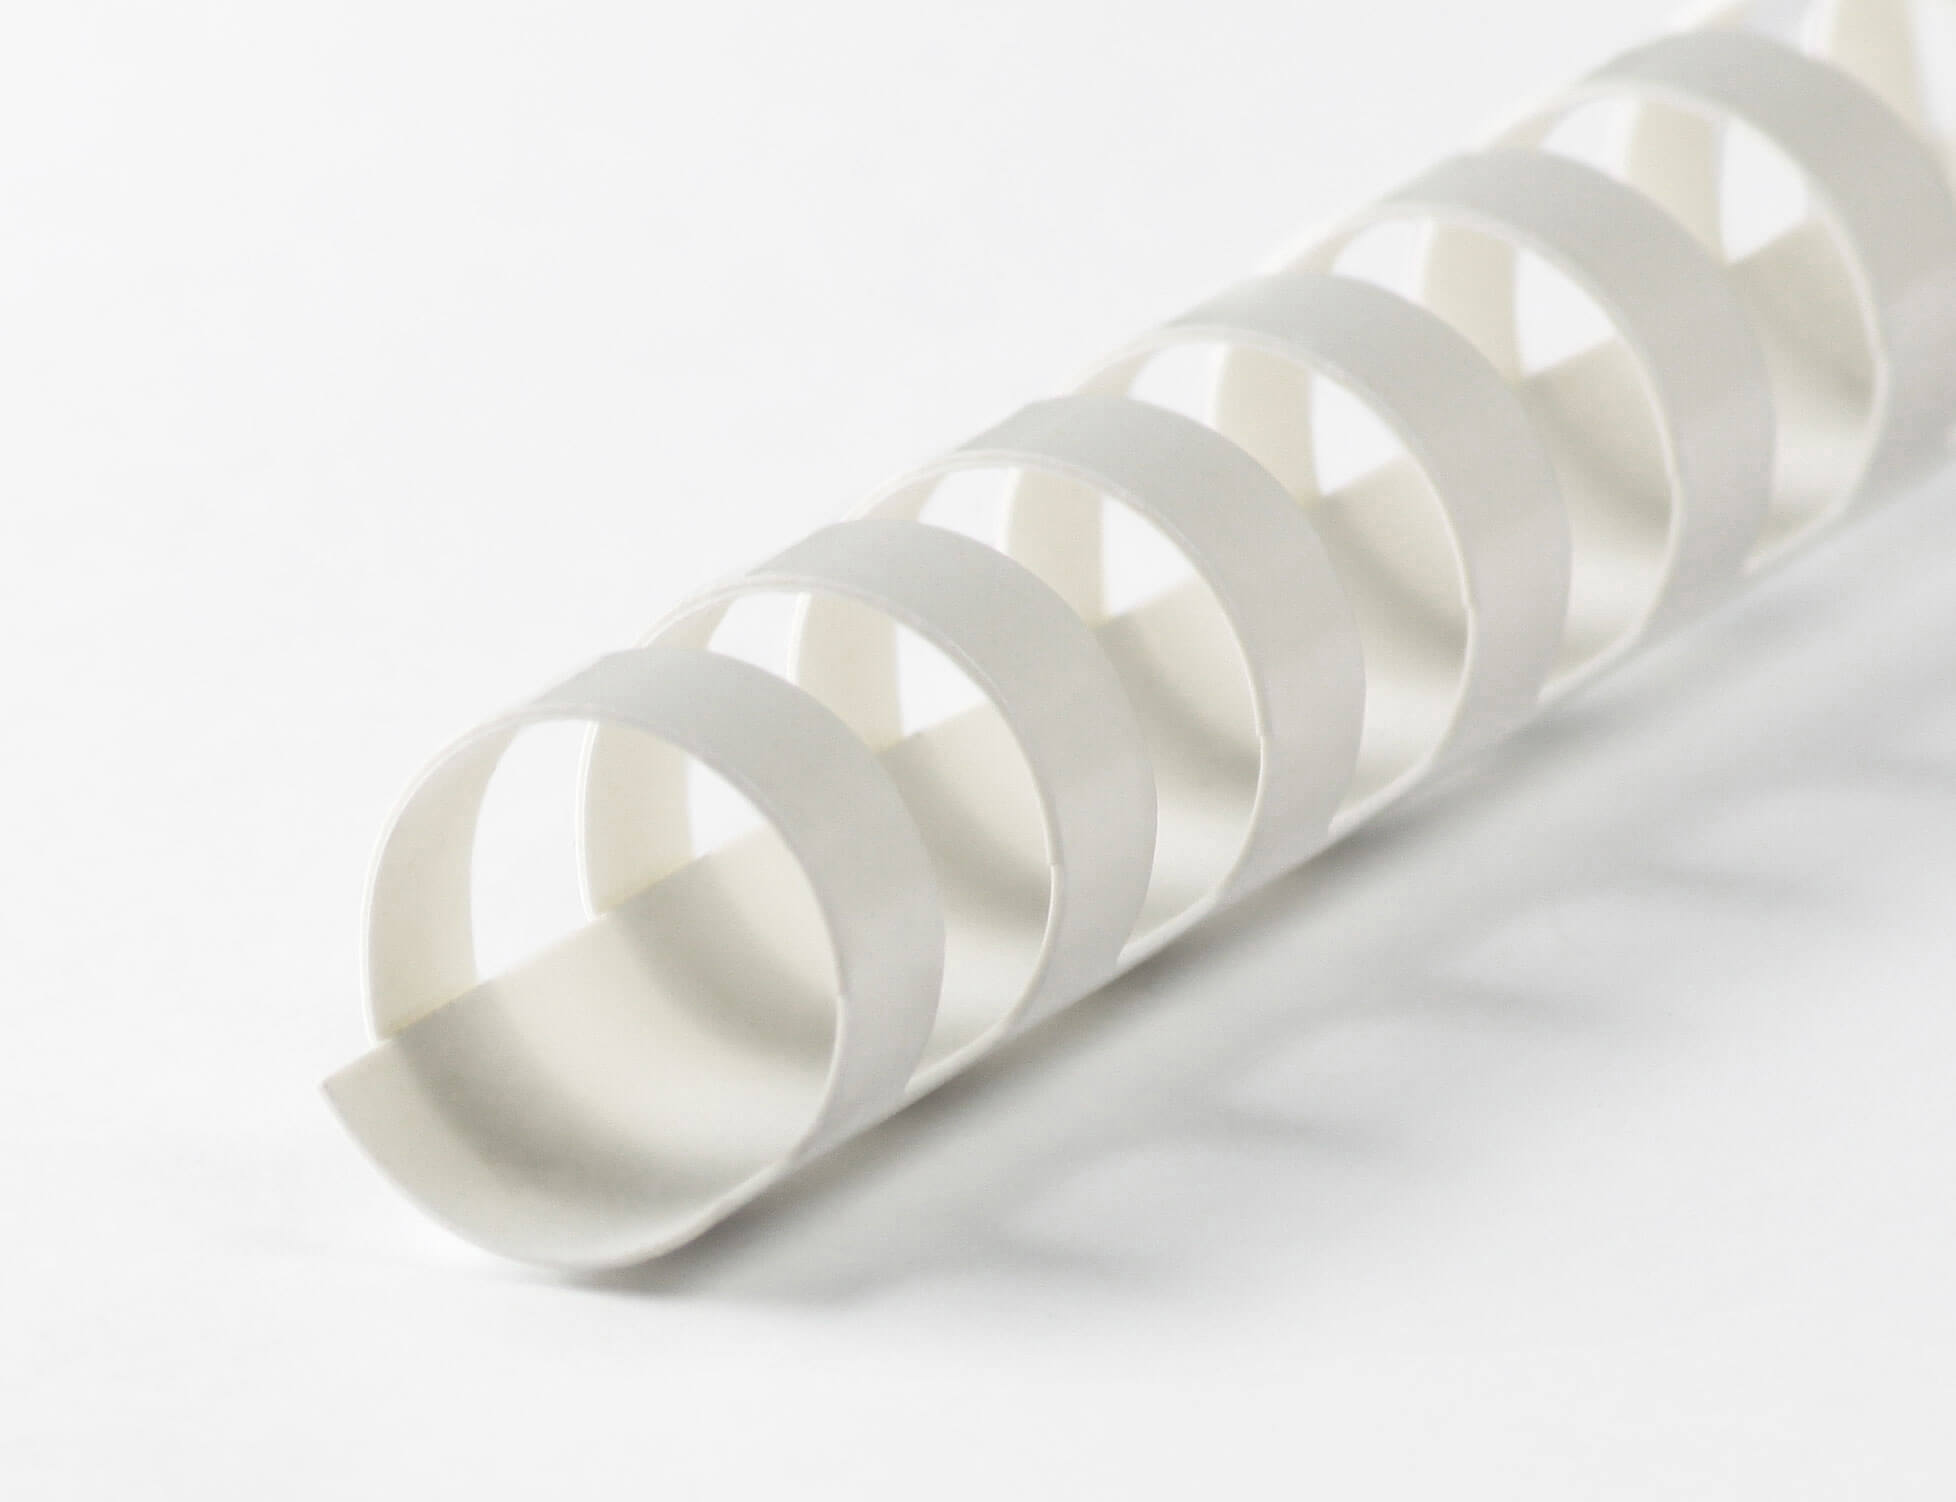 Plastikbinderücken 24 Ringe 25mm weiß, Premium Qualität | Bestnr. 24BRP250-WS